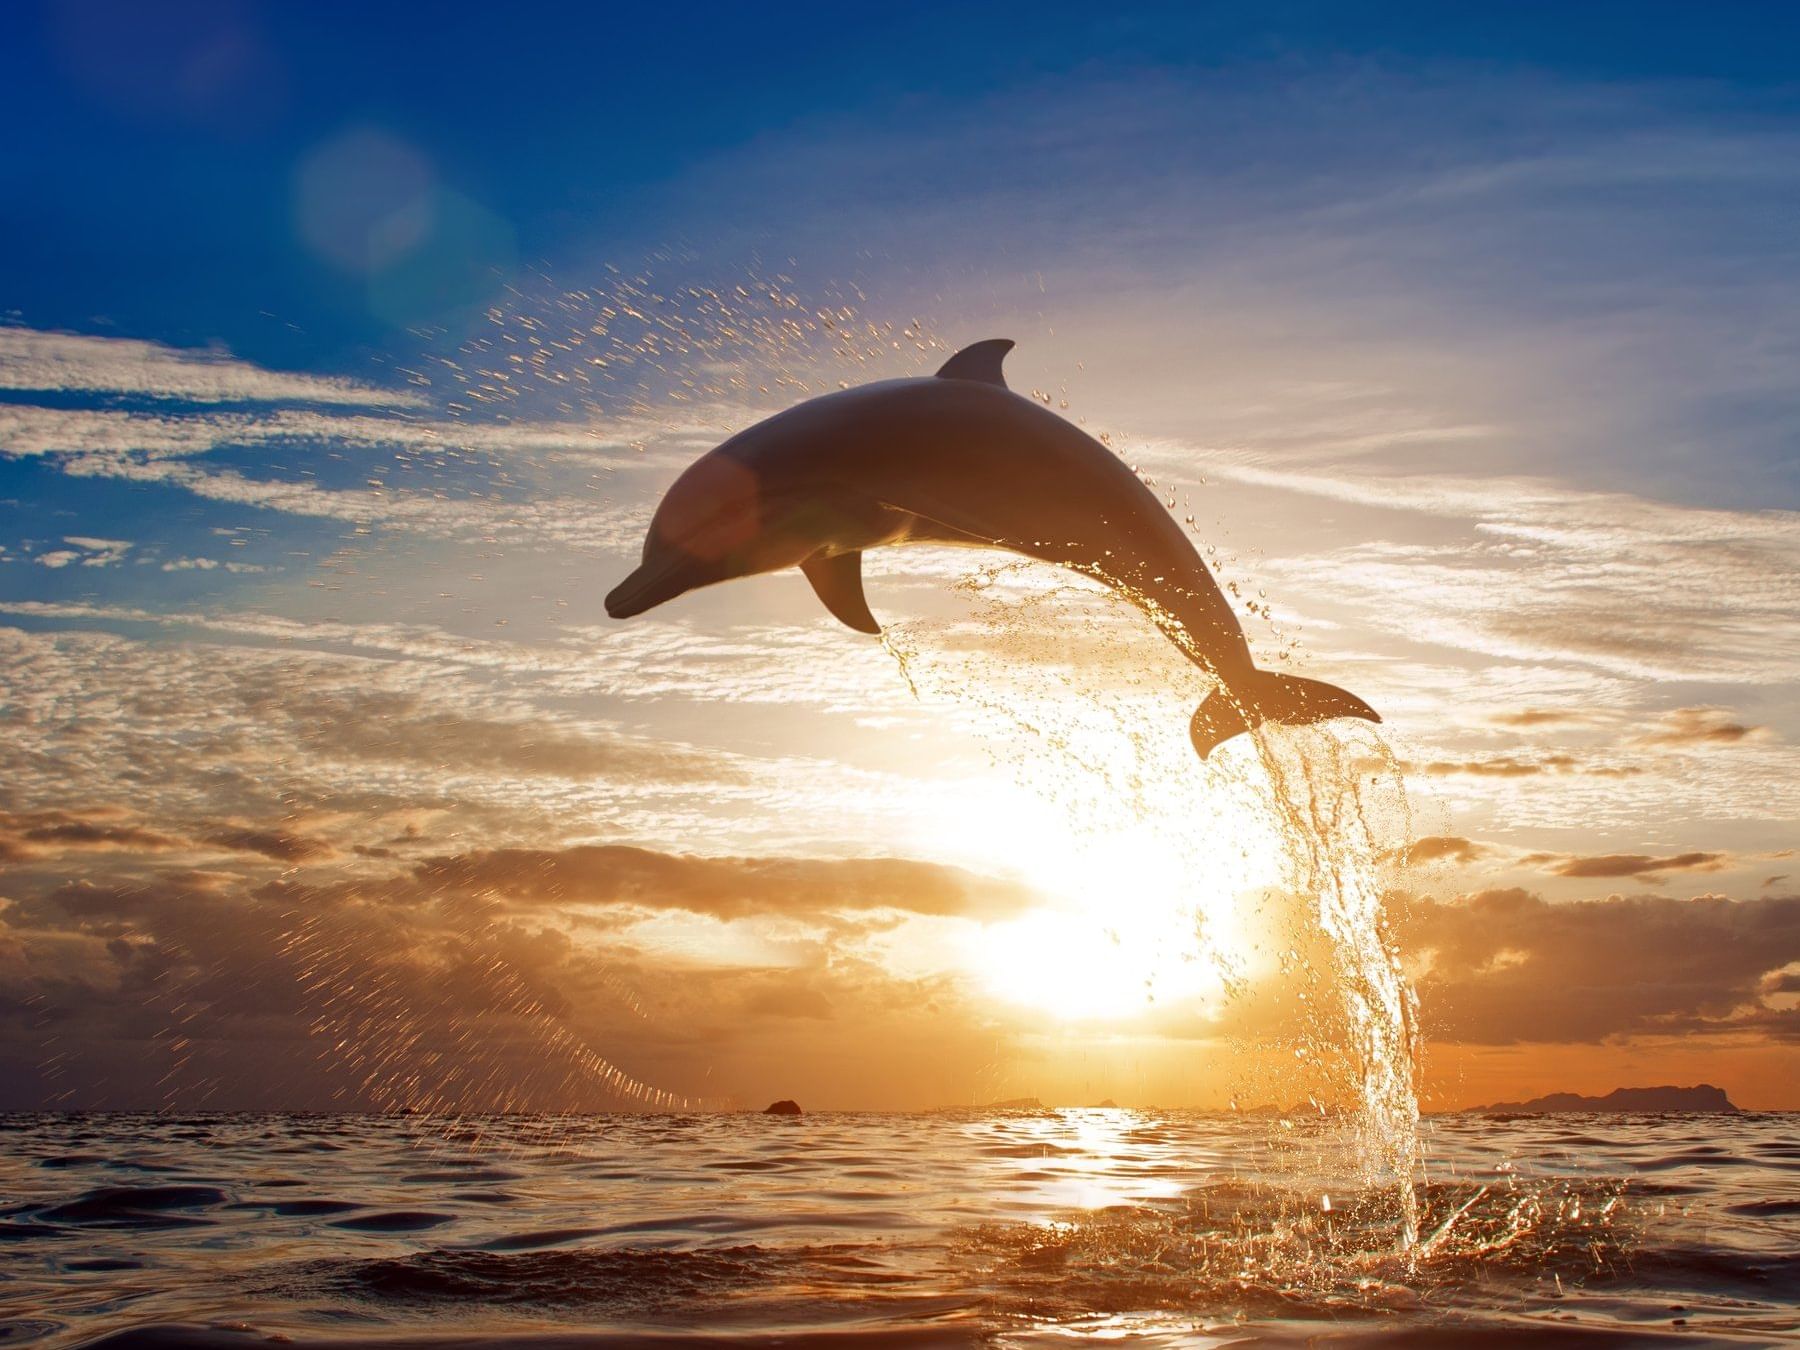 Dolphin Discovery Vallarta near FA Hotels & Resorts at sunset